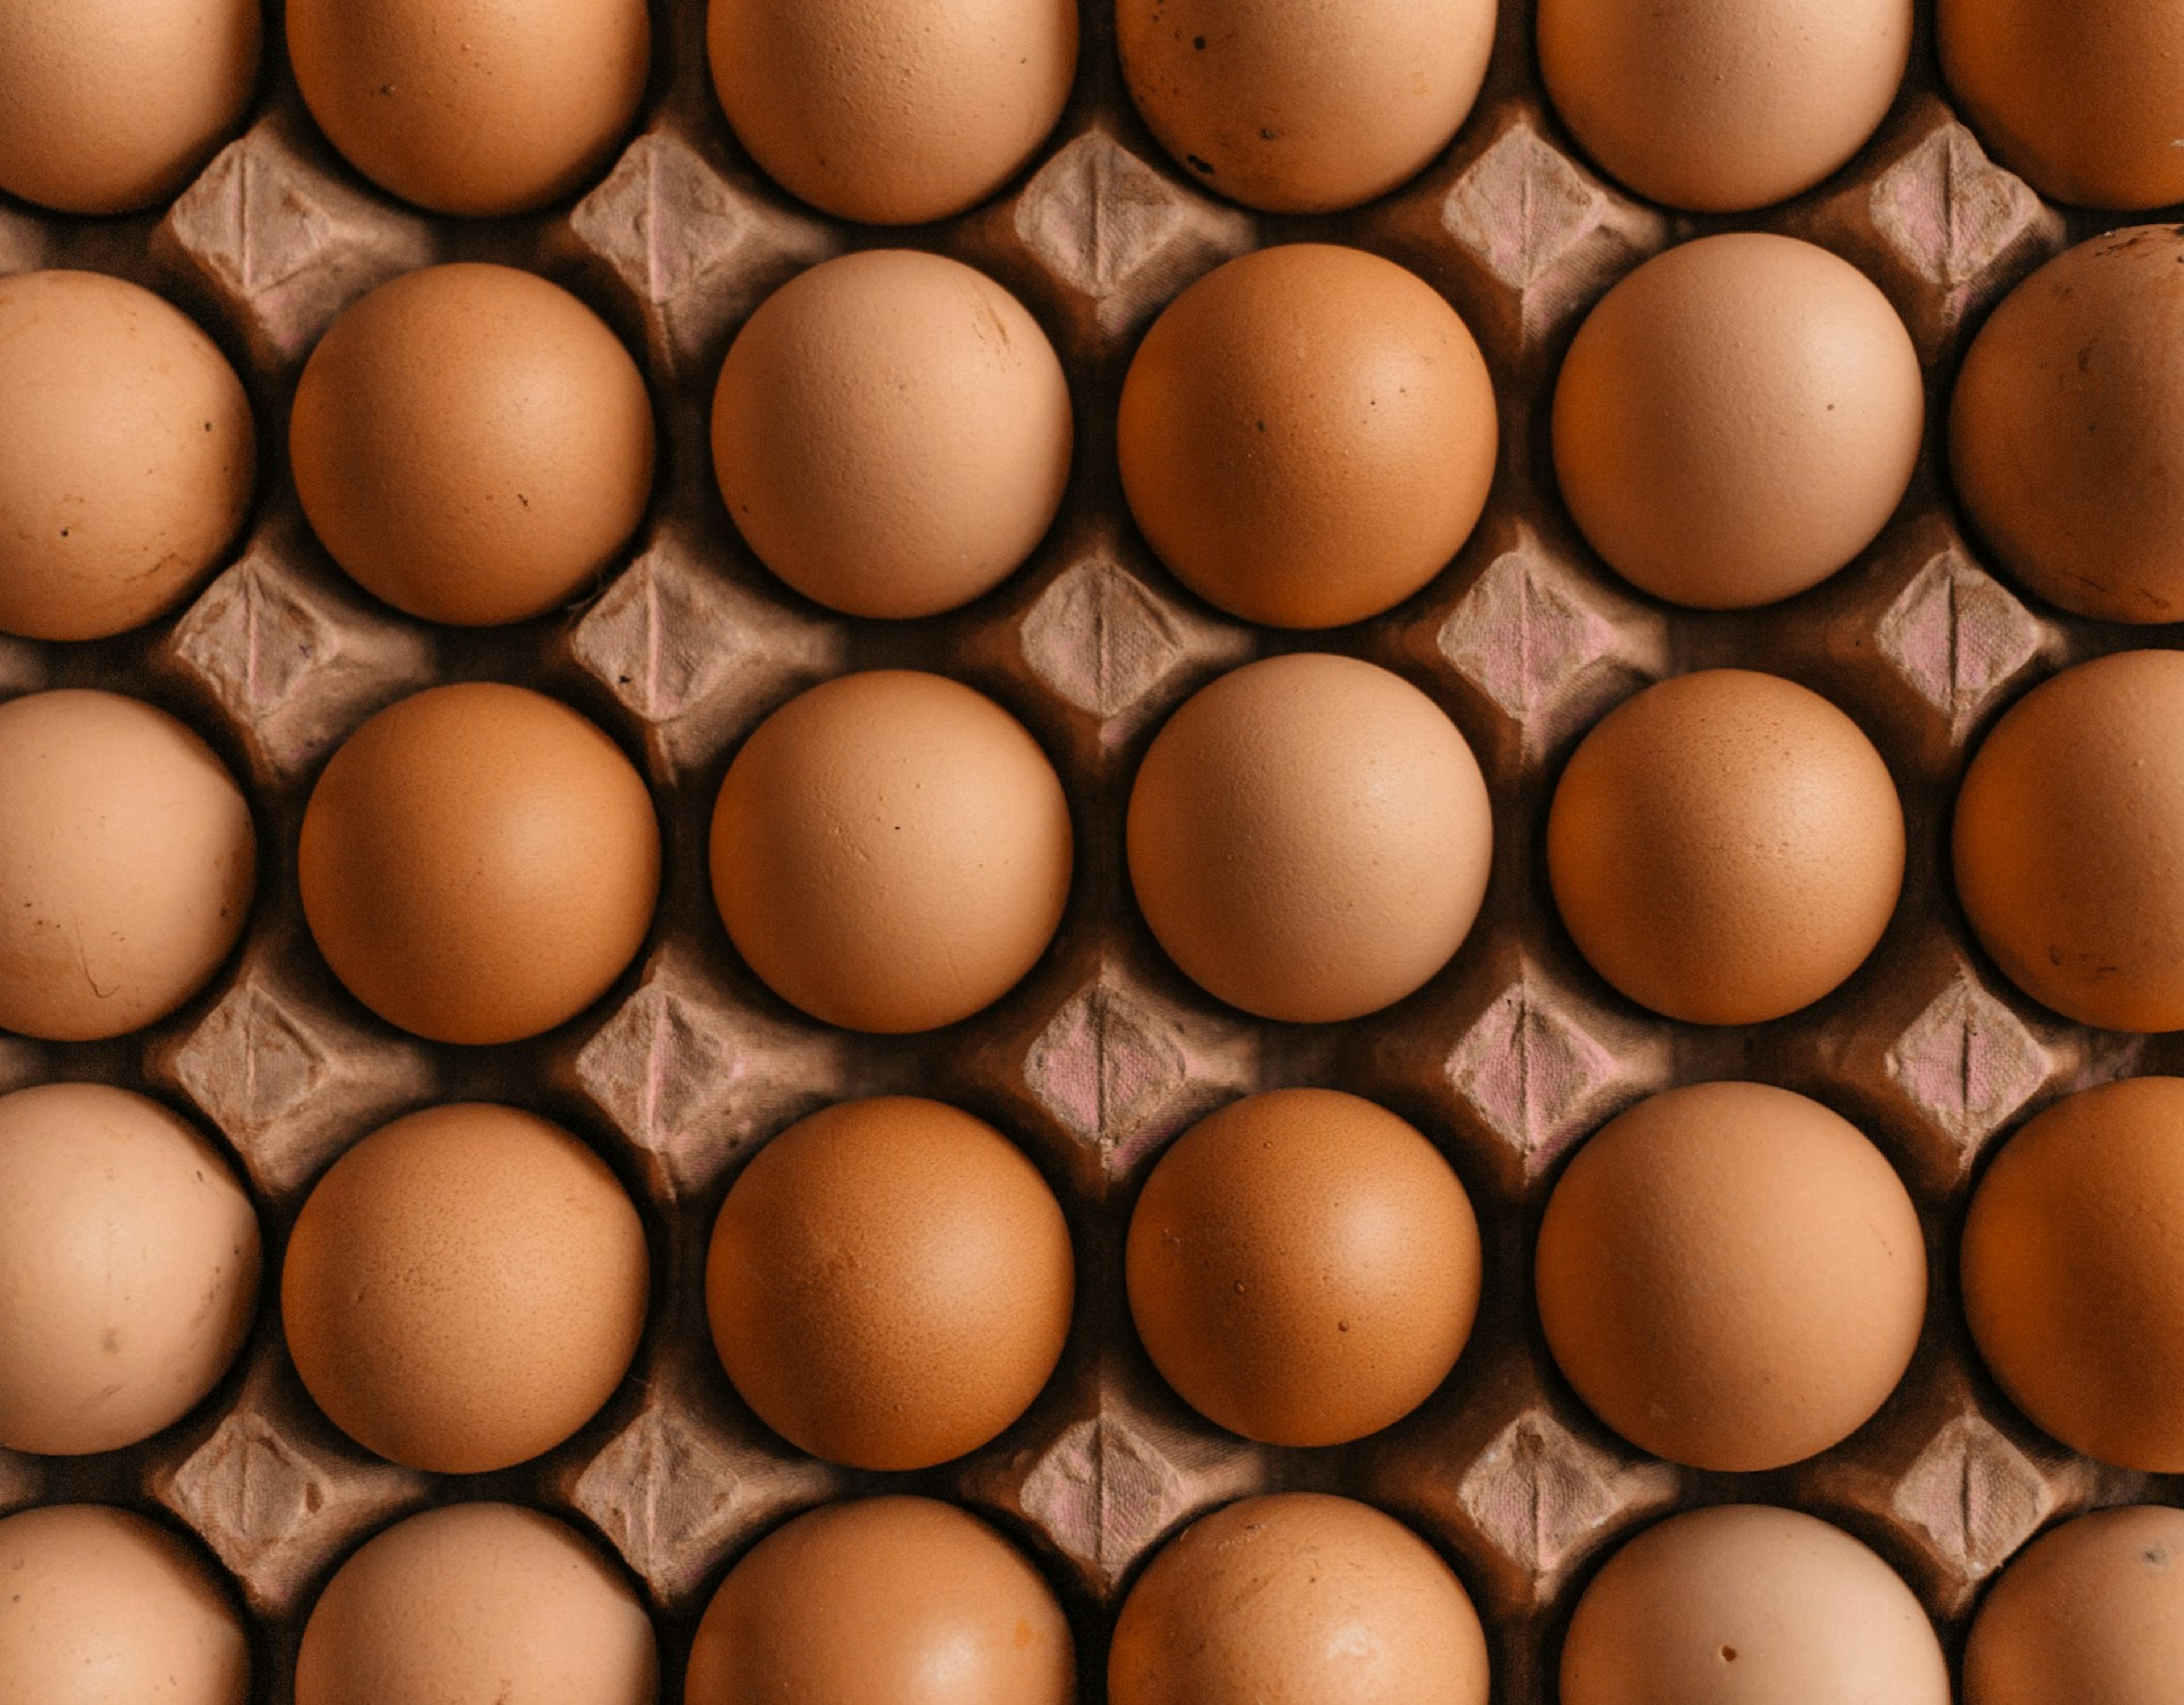 Nova studija otkrila može li veća konzumacija jaja pomoći u prevenciji osteoporoze